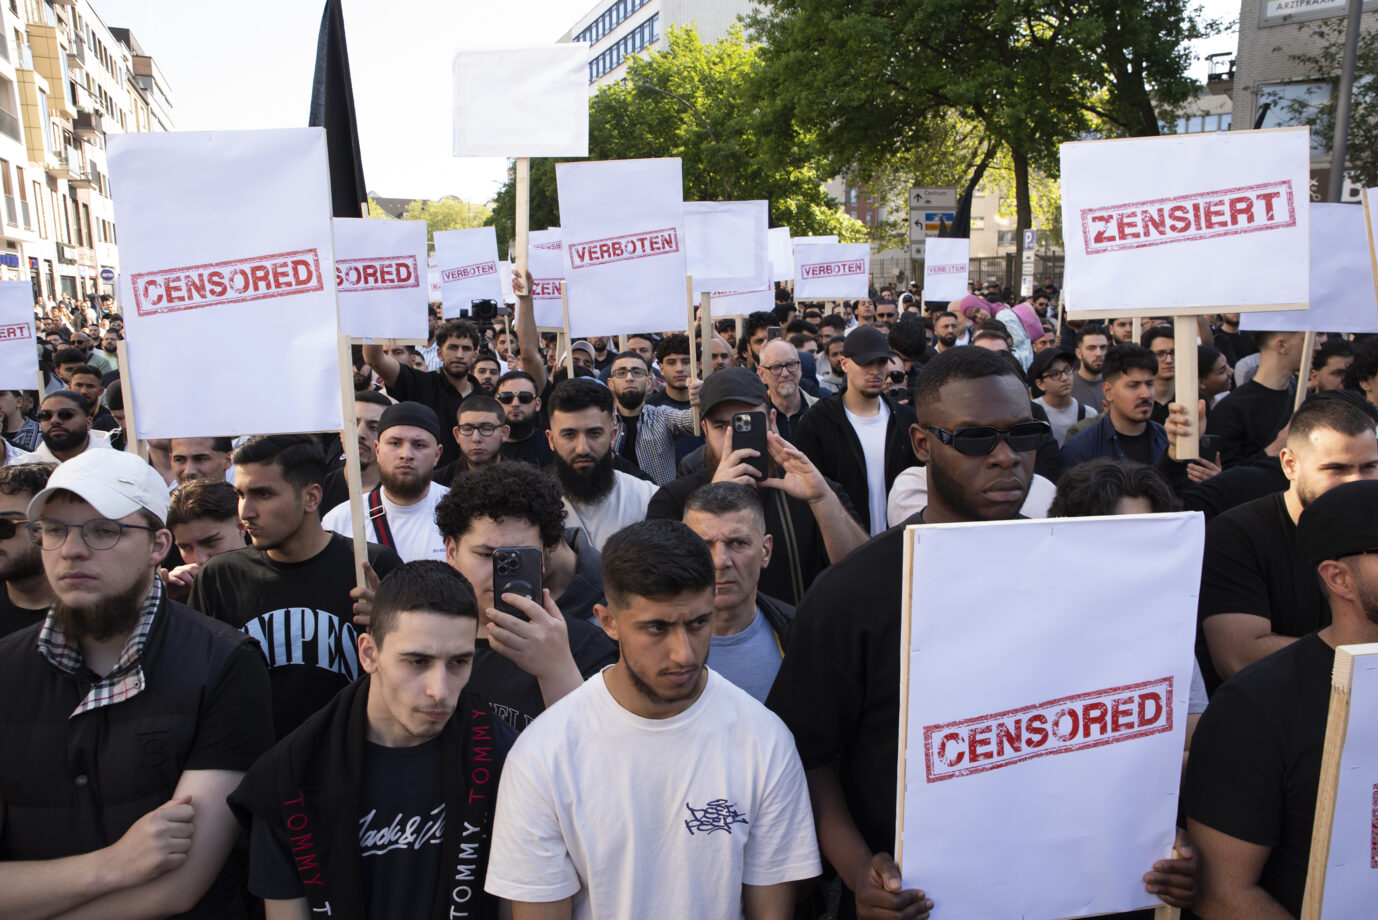 Mitglieder der islamistischen Gruppierung "Muslim Interaktiv" halten während einer Demonstration in Hamburg Schilder hoch